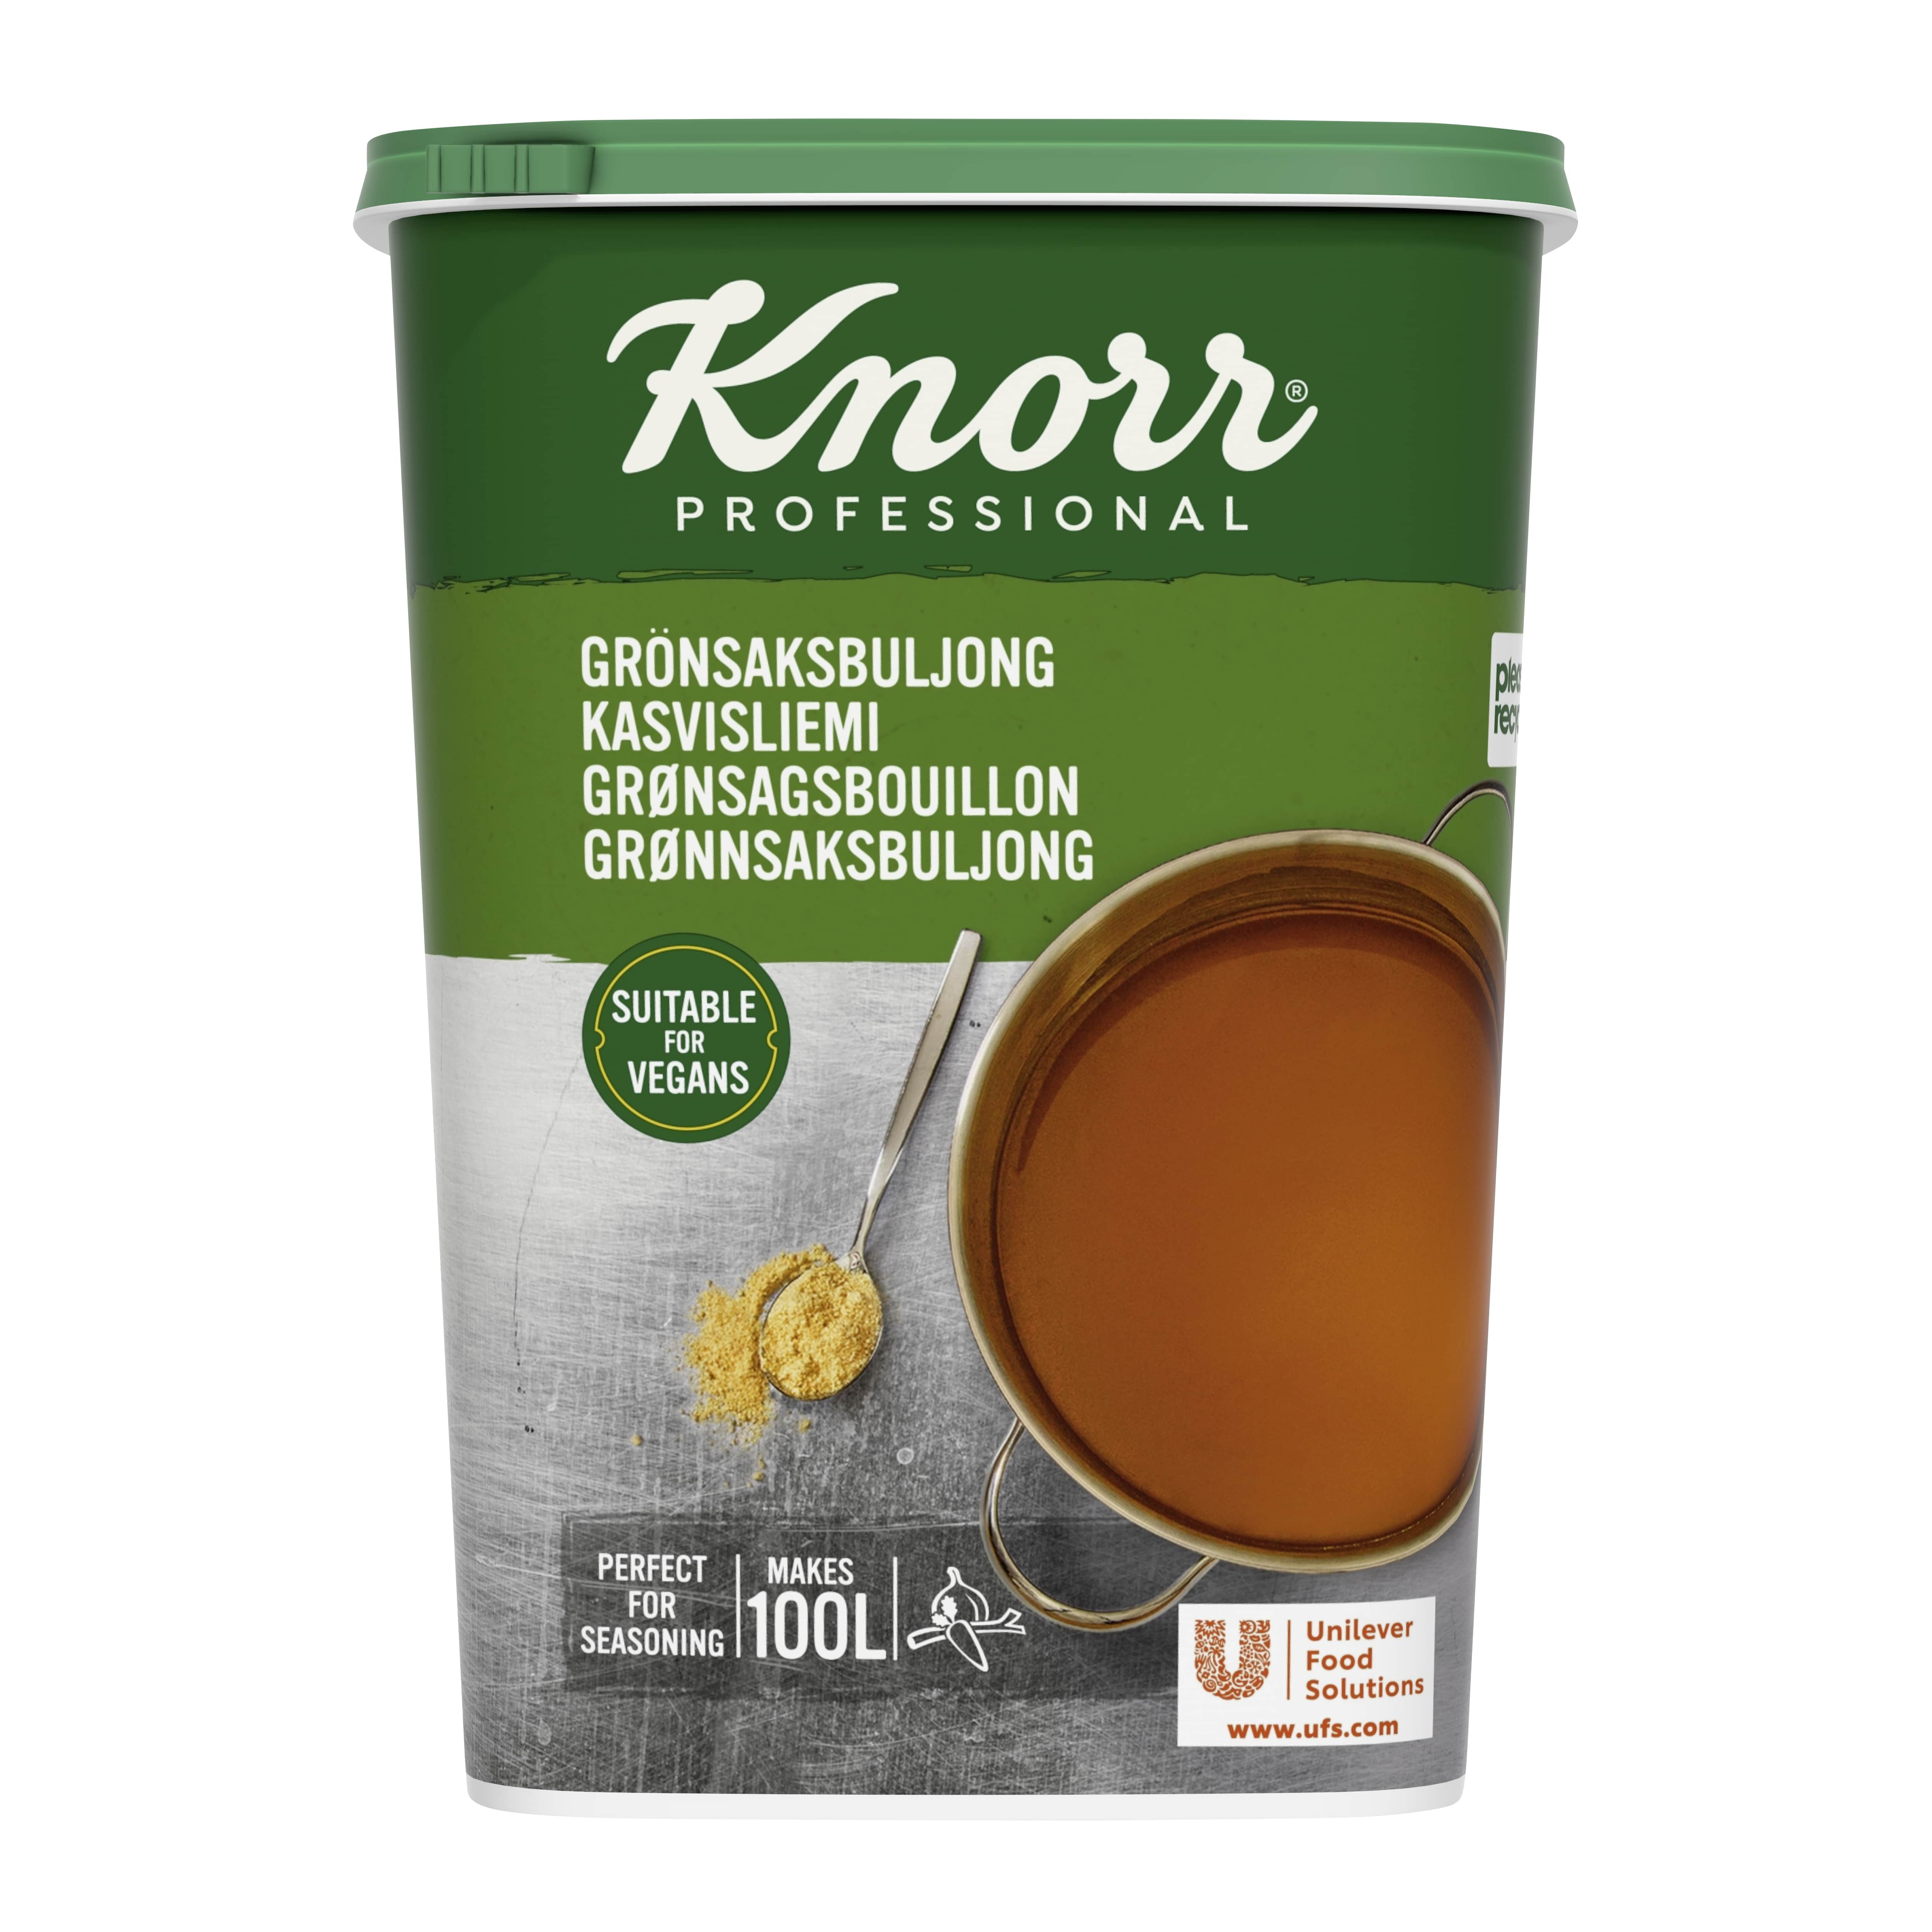 Knorr Kasvisliemi 1,5 kg / 100 L